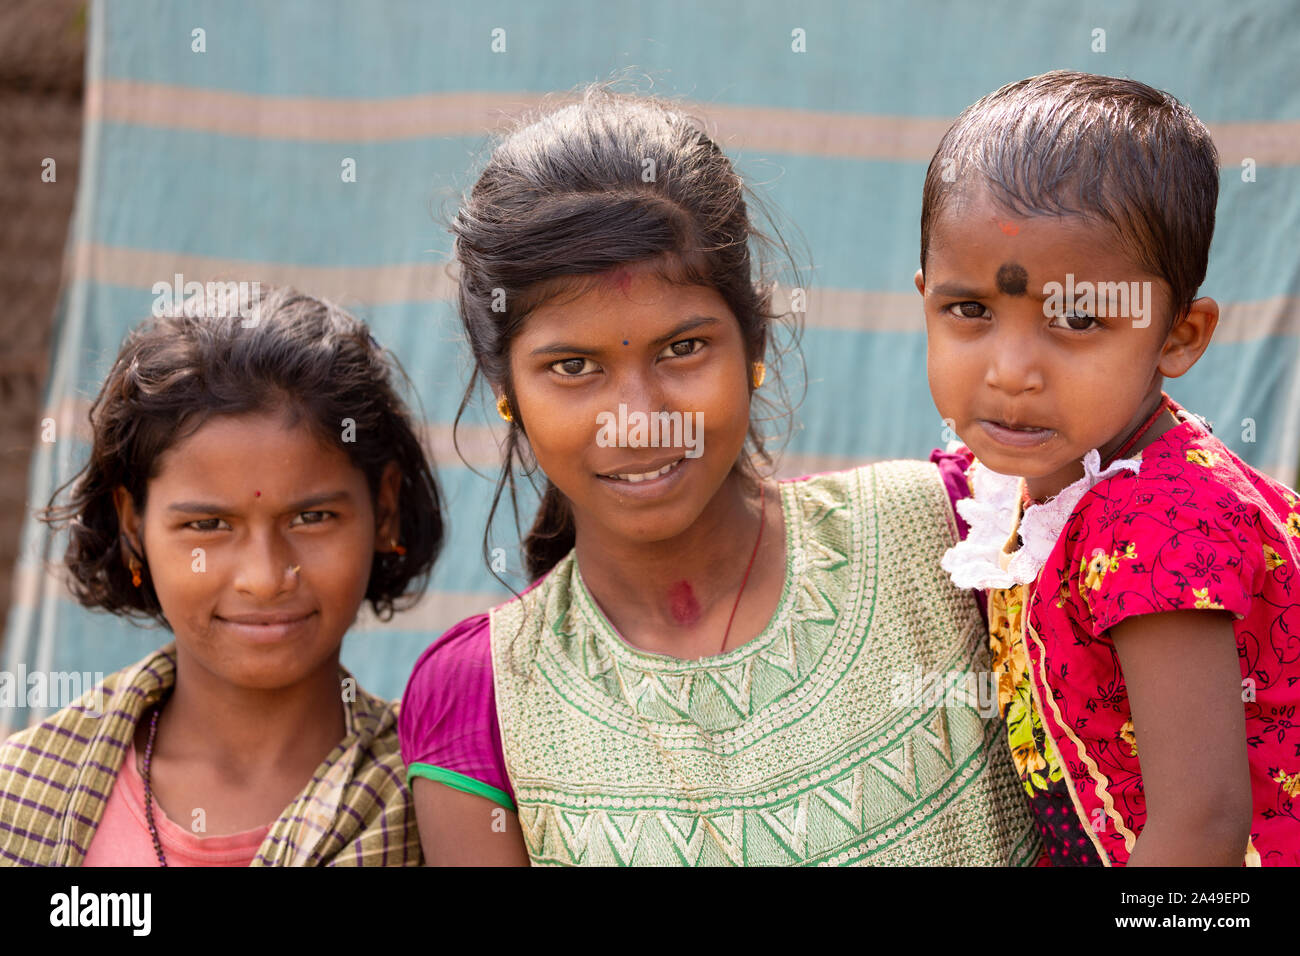 CHANDANPUR, INDE, LE 14 JANVIER 2019 : Portrait de jeunes sœurs Indiennes dans une rue rurale Banque D'Images